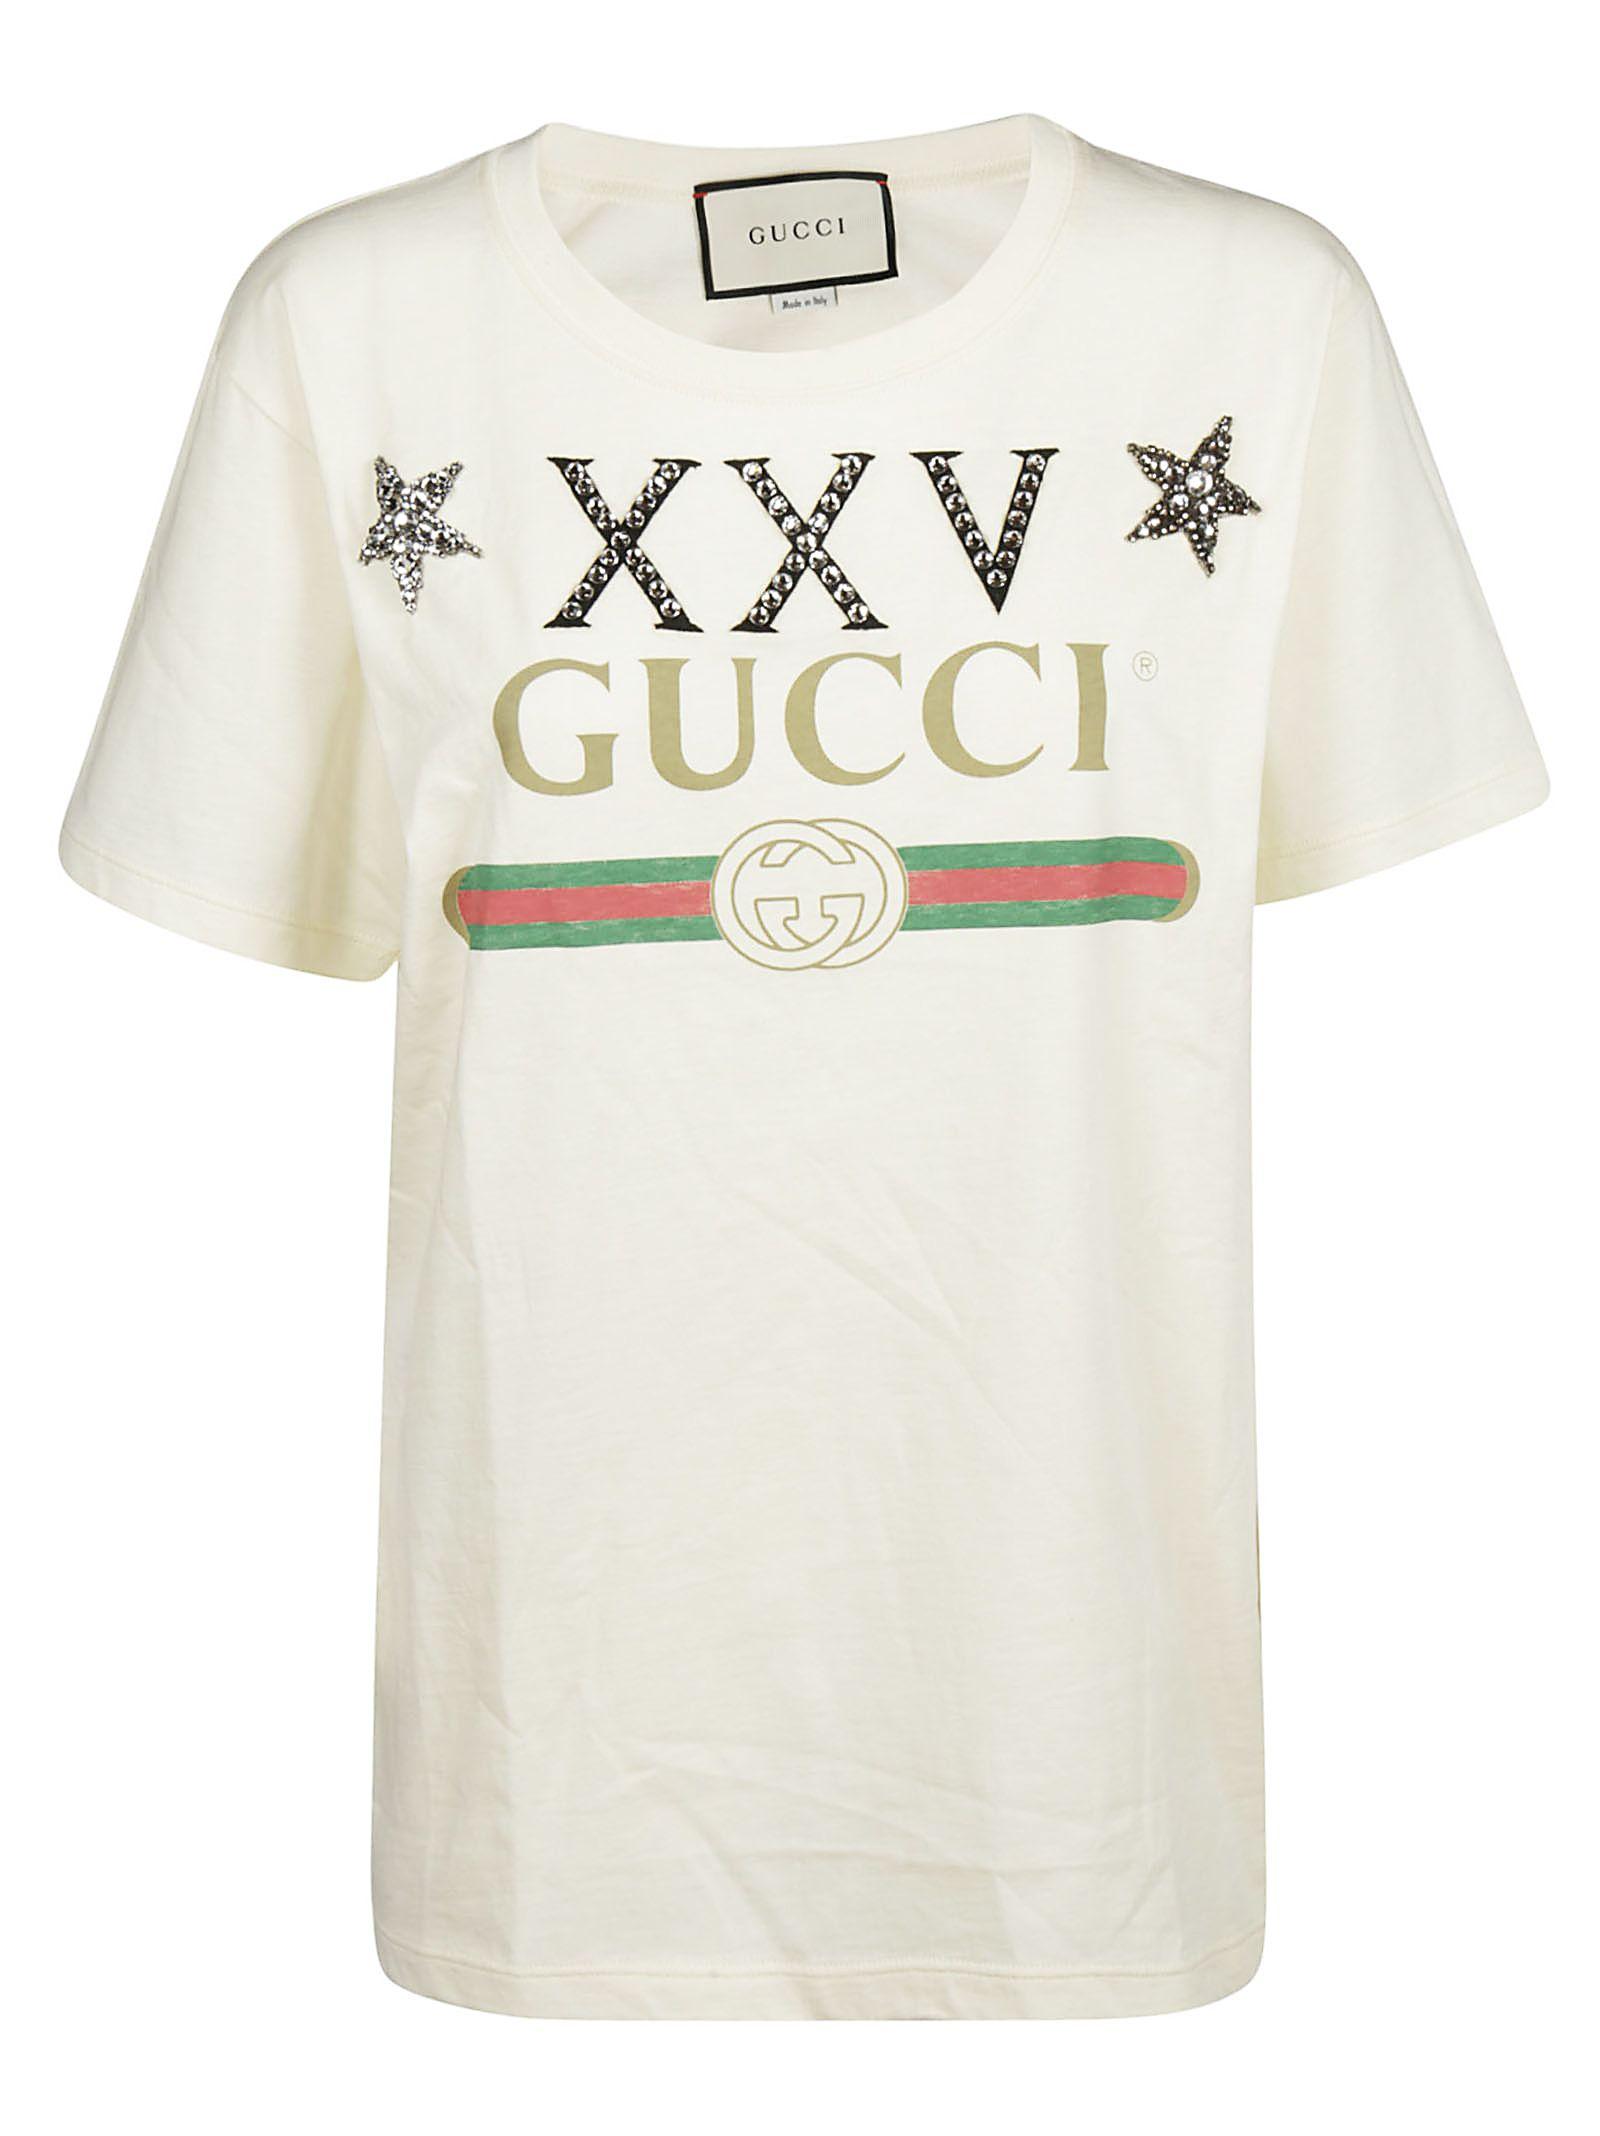 gucci bling shirt